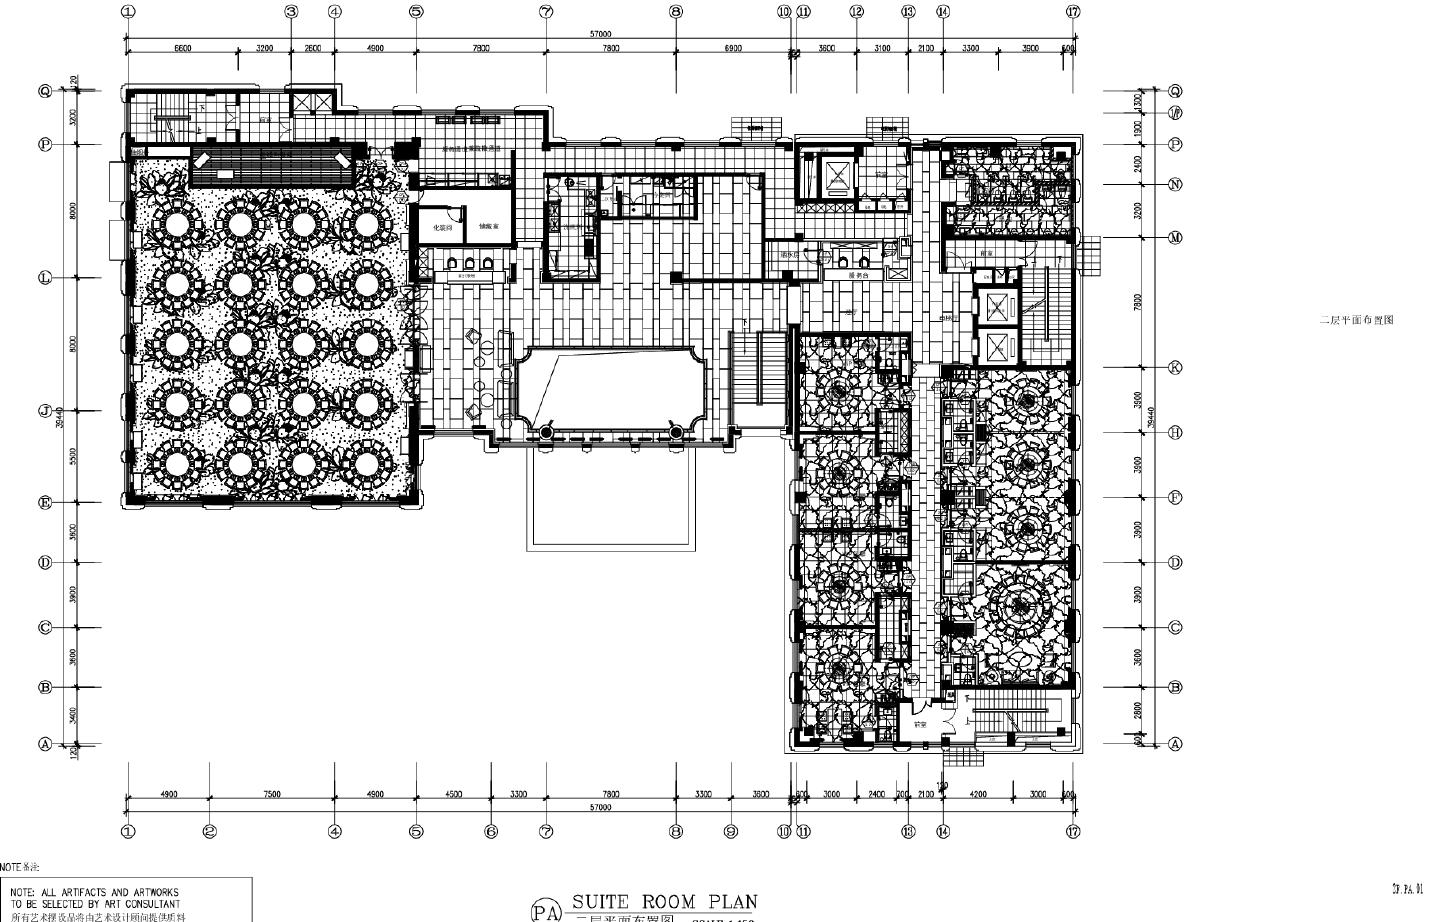 新中式某逊酒店二层综合平面装饰设计CAD图